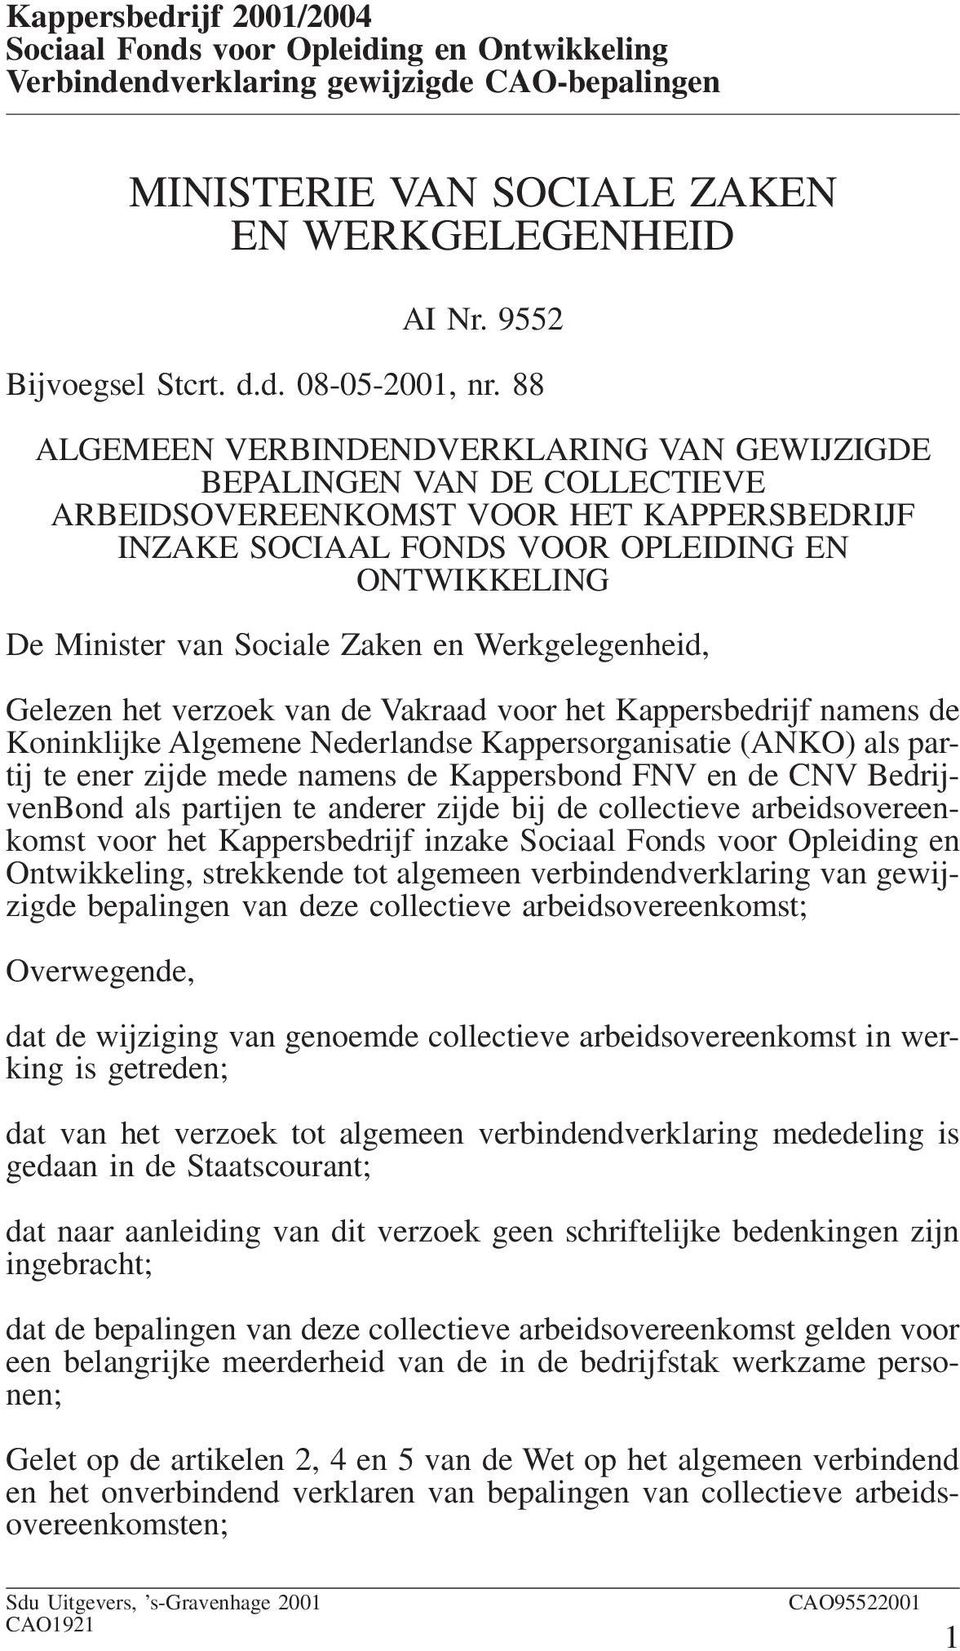 Zaken en Werkgelegenheid, Gelezen het verzoek van de Vakraad voor het Kappersbedrijf namens de Koninklijke Algemene Nederlandse Kappersorganisatie (ANKO) als partij te ener zijde mede namens de